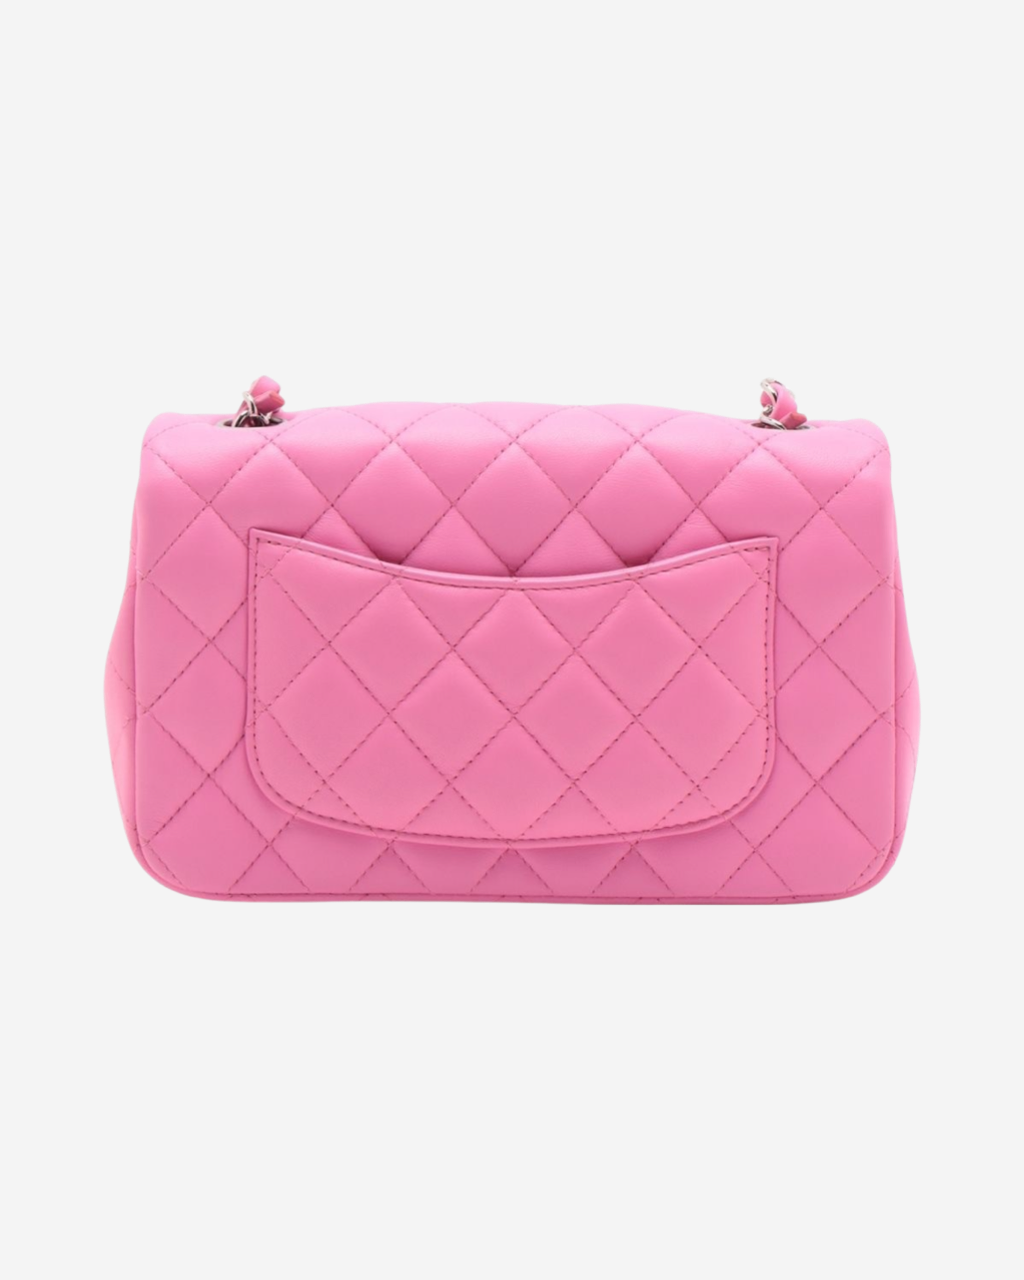 Chanel Mini Classic Flap Bag